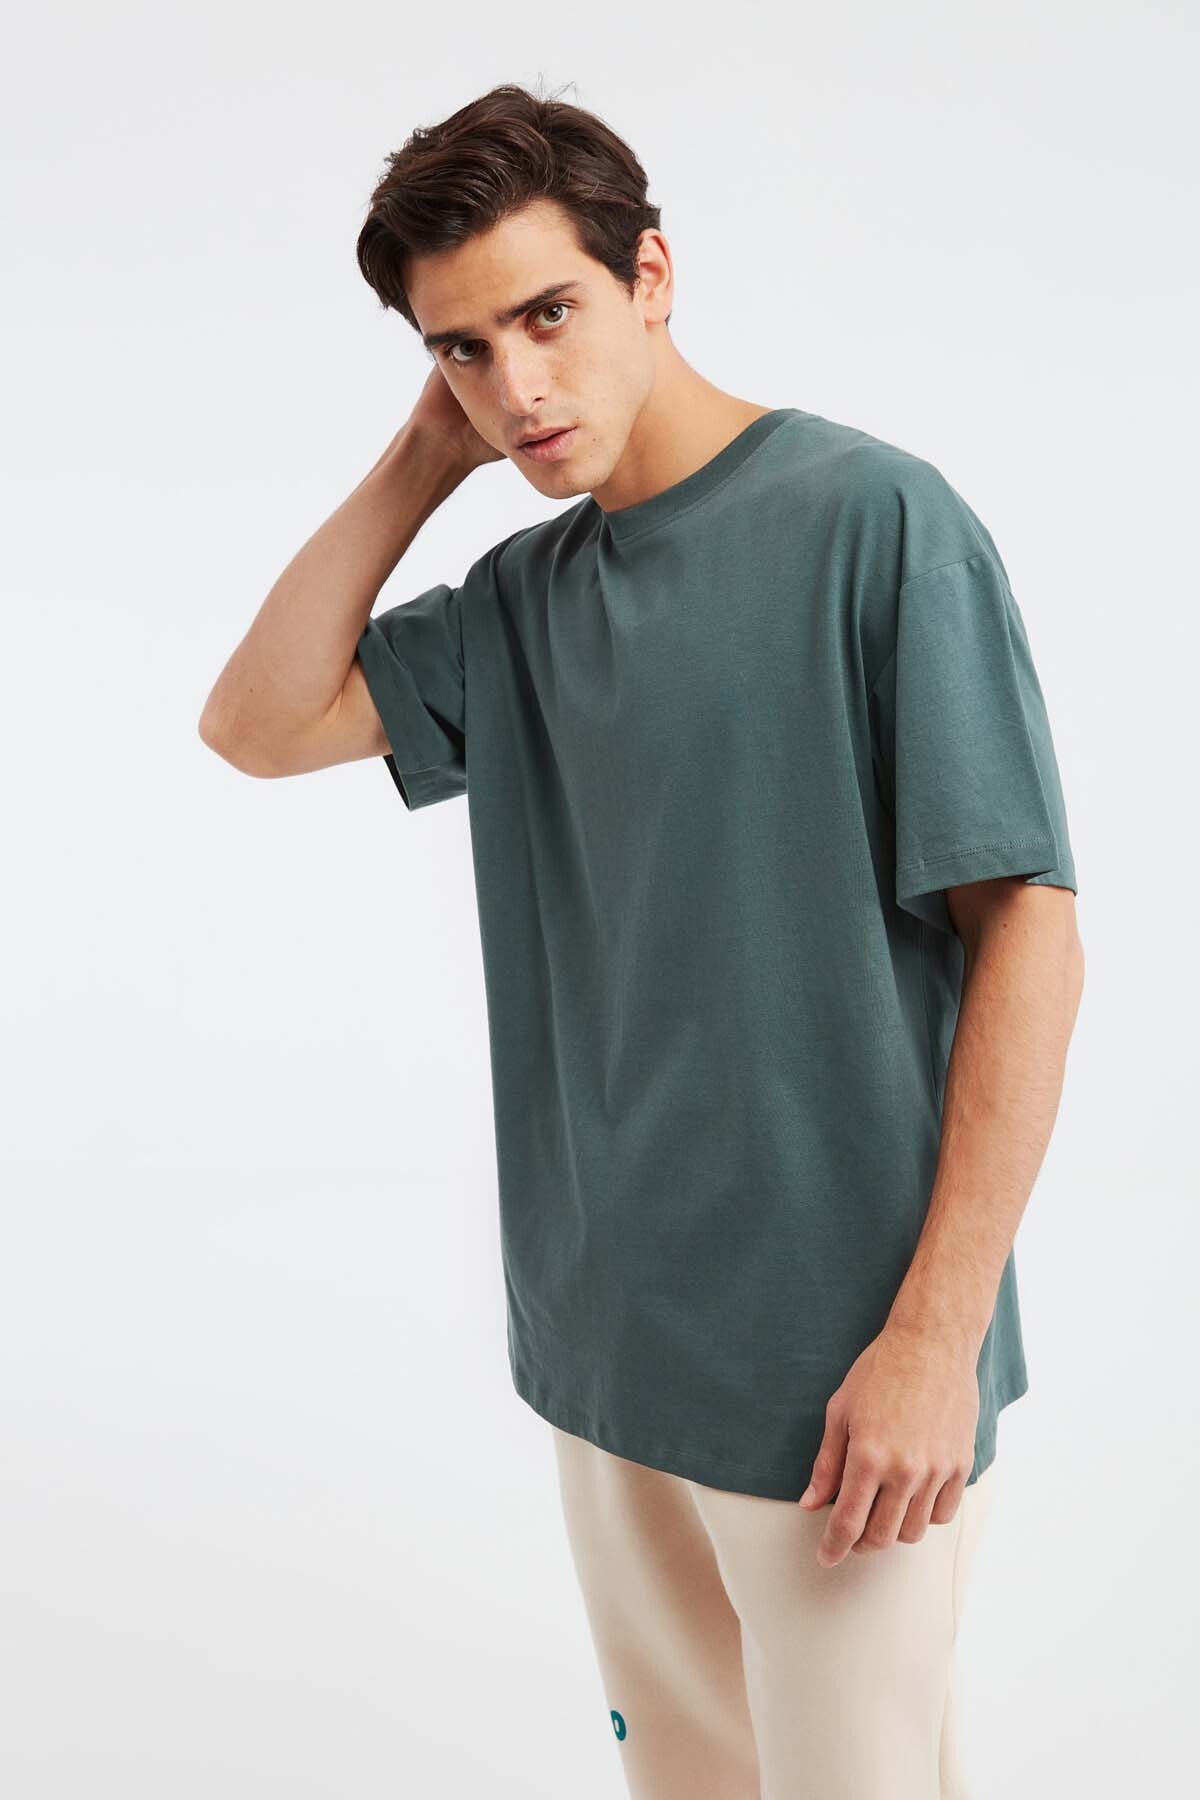 Мужская футболка оверсайз Jett из 100% хлопка с плотной текстурой GRIMELANGE, зеленый футболка мужская оверсайз из хлопка xs